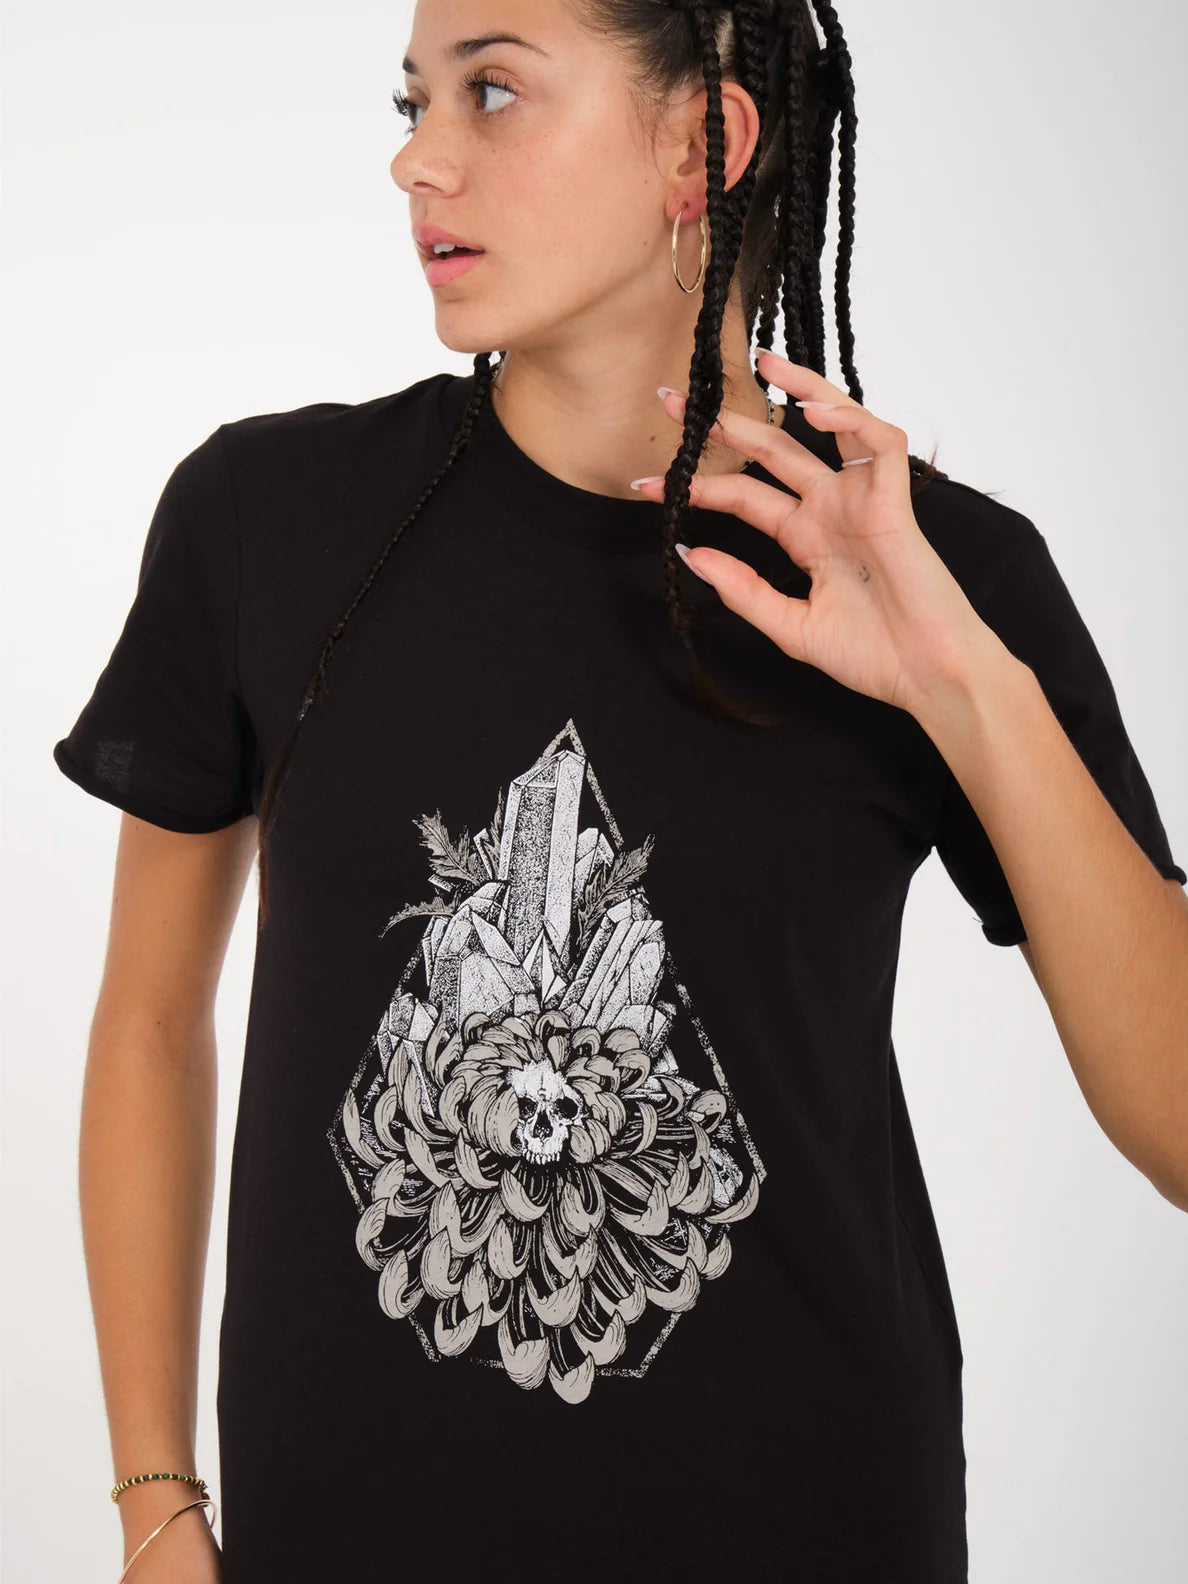 Camiseta Chica Volcom Radical Daze - Black | Camisetas manga corta de mujer | Volcom Shop | surfdevils.com